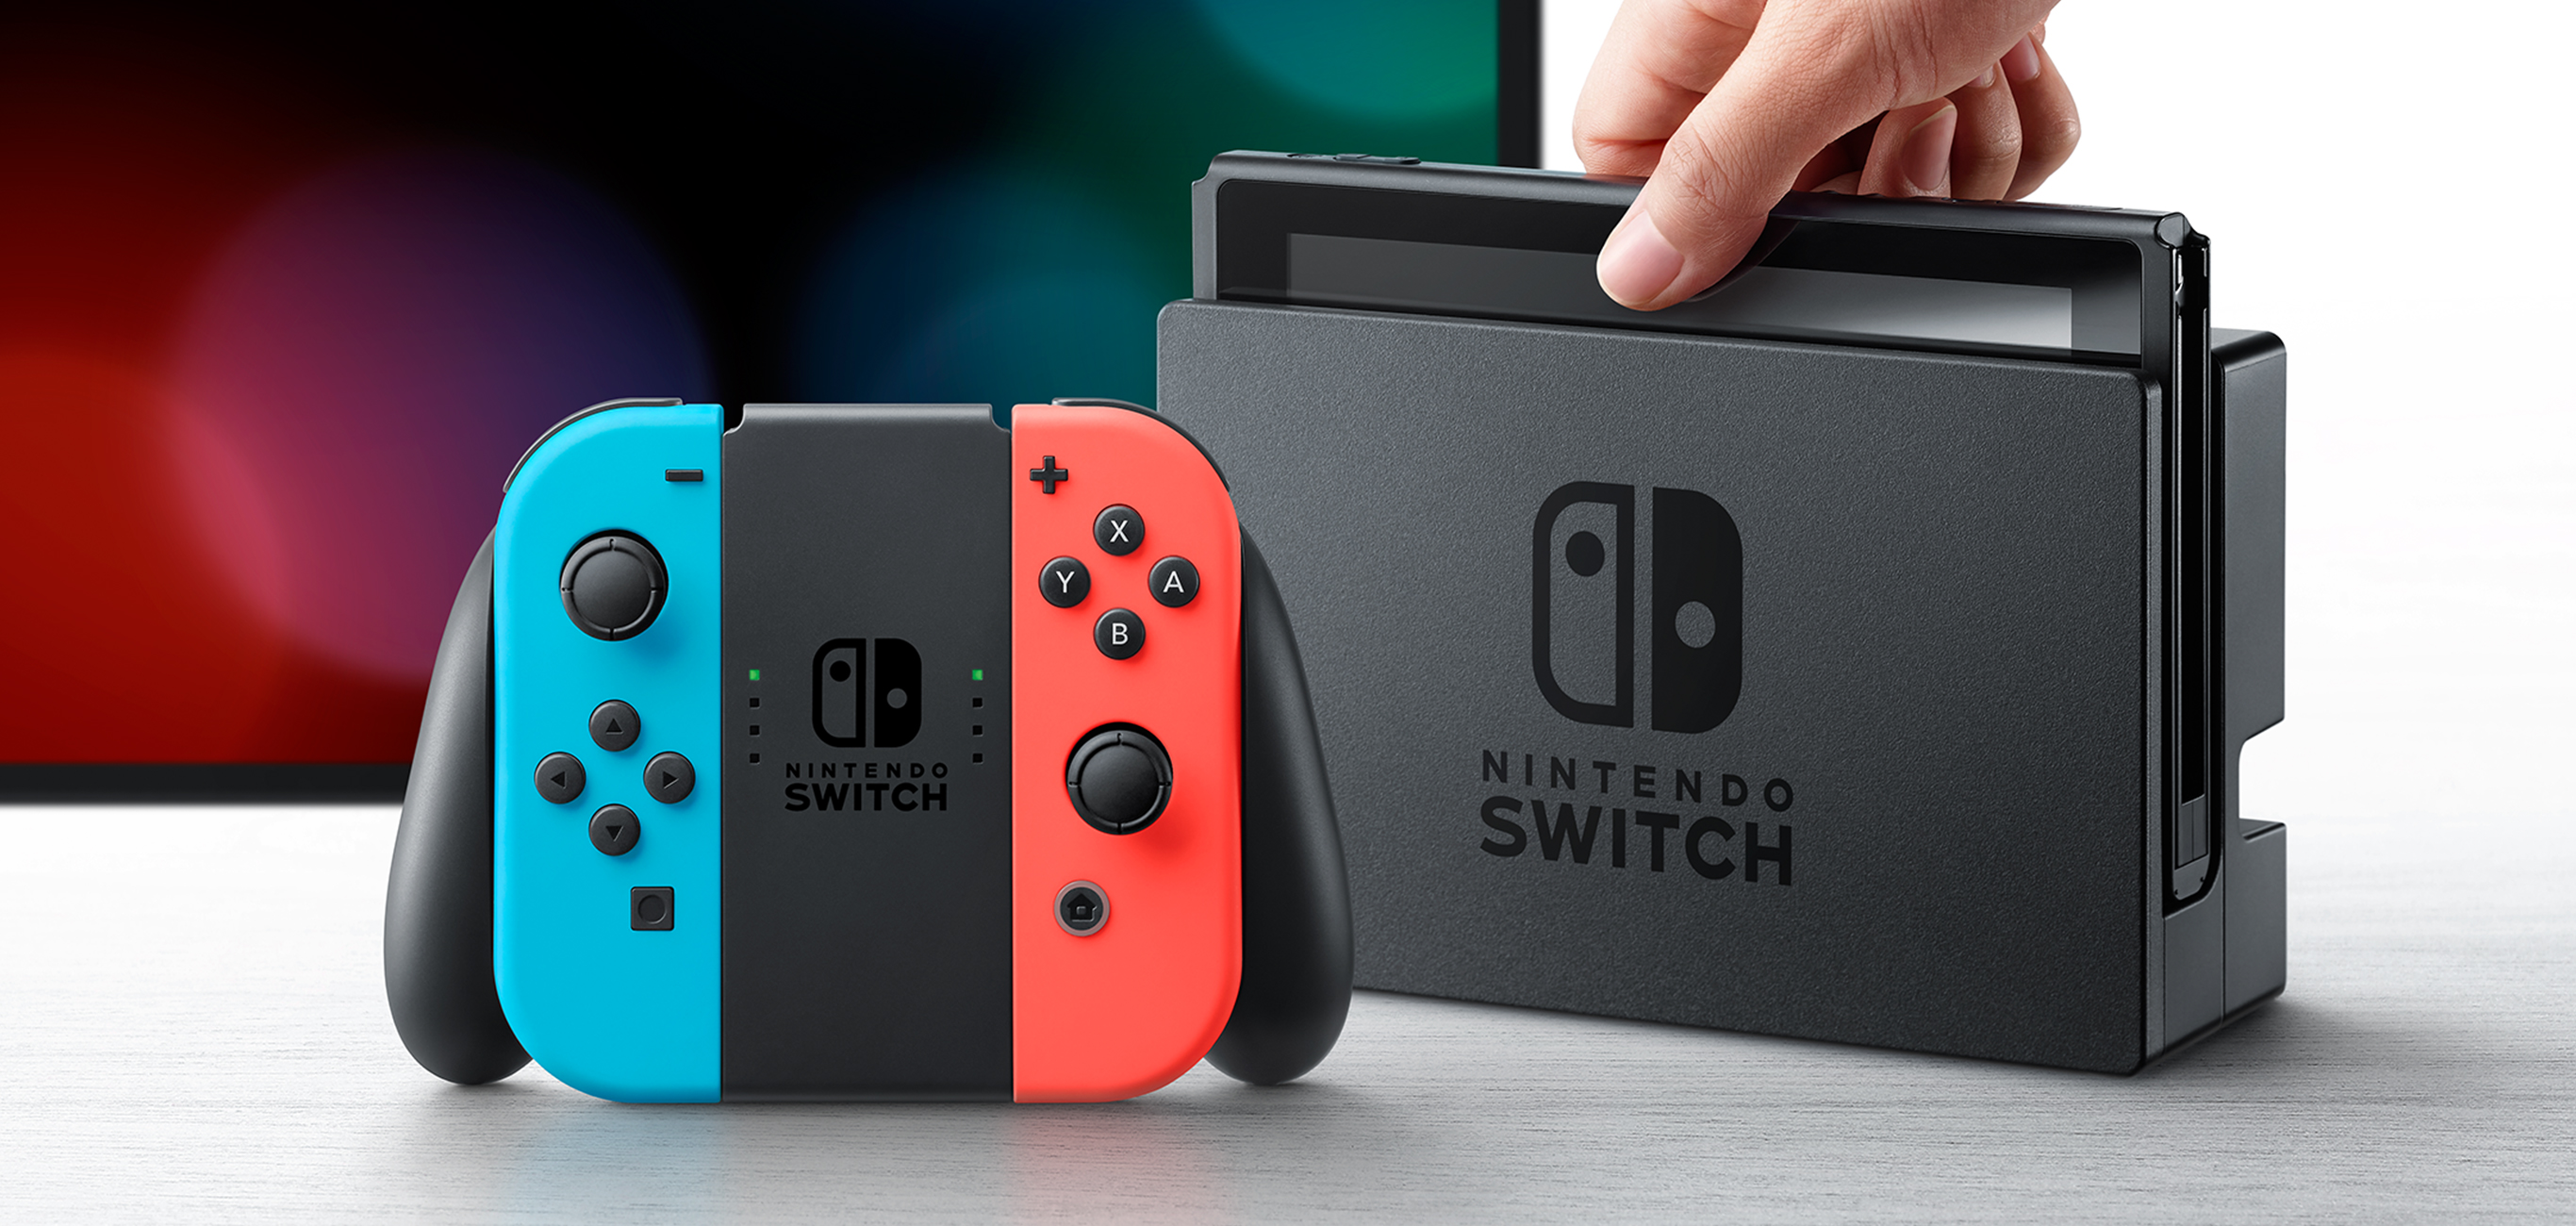 任天堂公布2017 年度業績Nintendo Switch 熱賣帶動營業額翻倍- 巴哈姆特